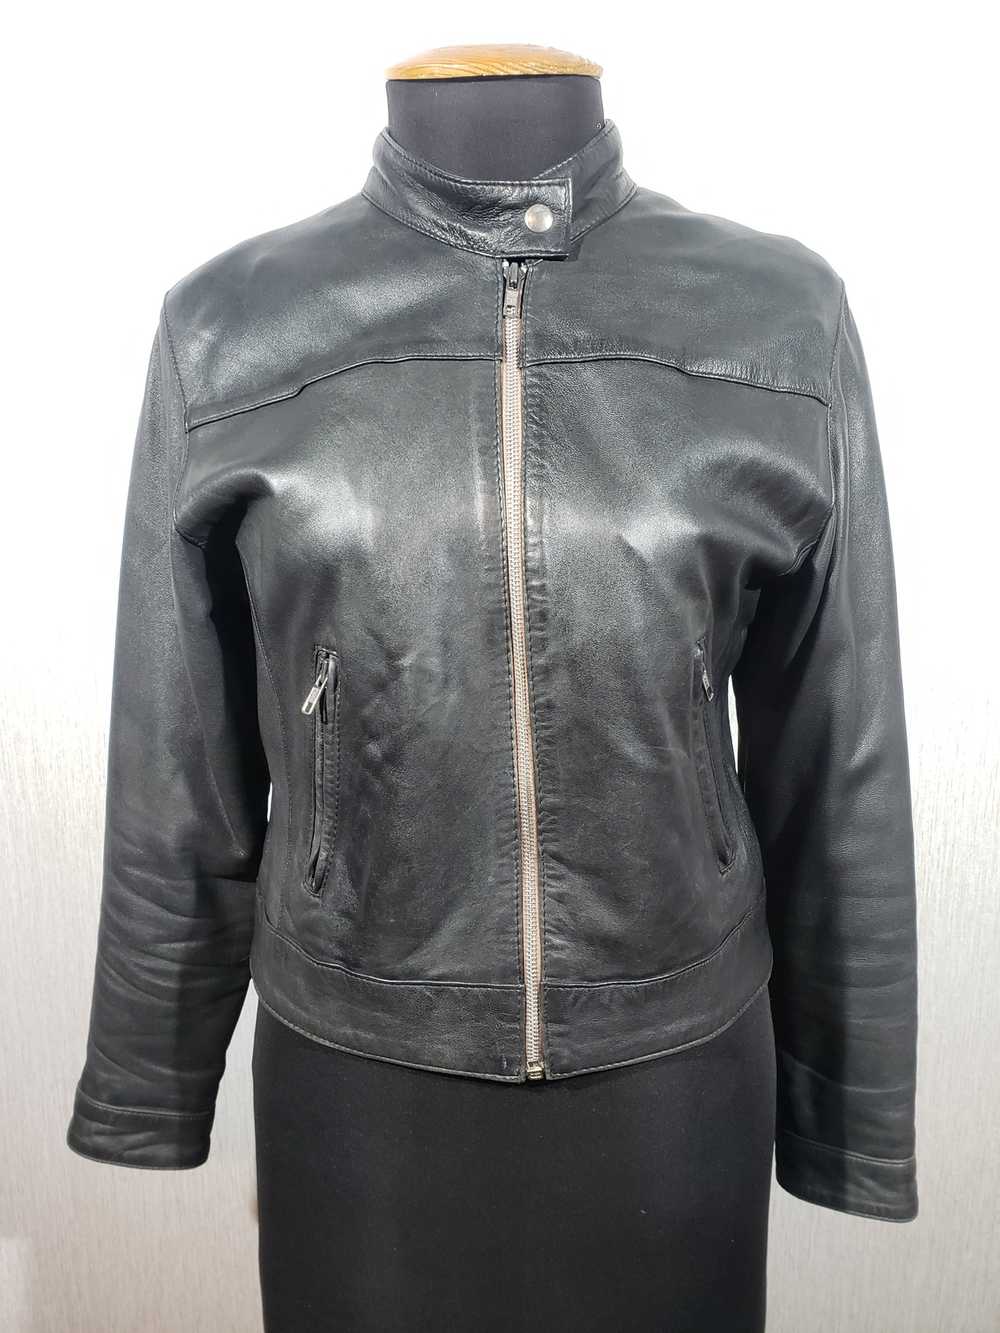 Designer × Leather Jacket Black women's sports ja… - image 1